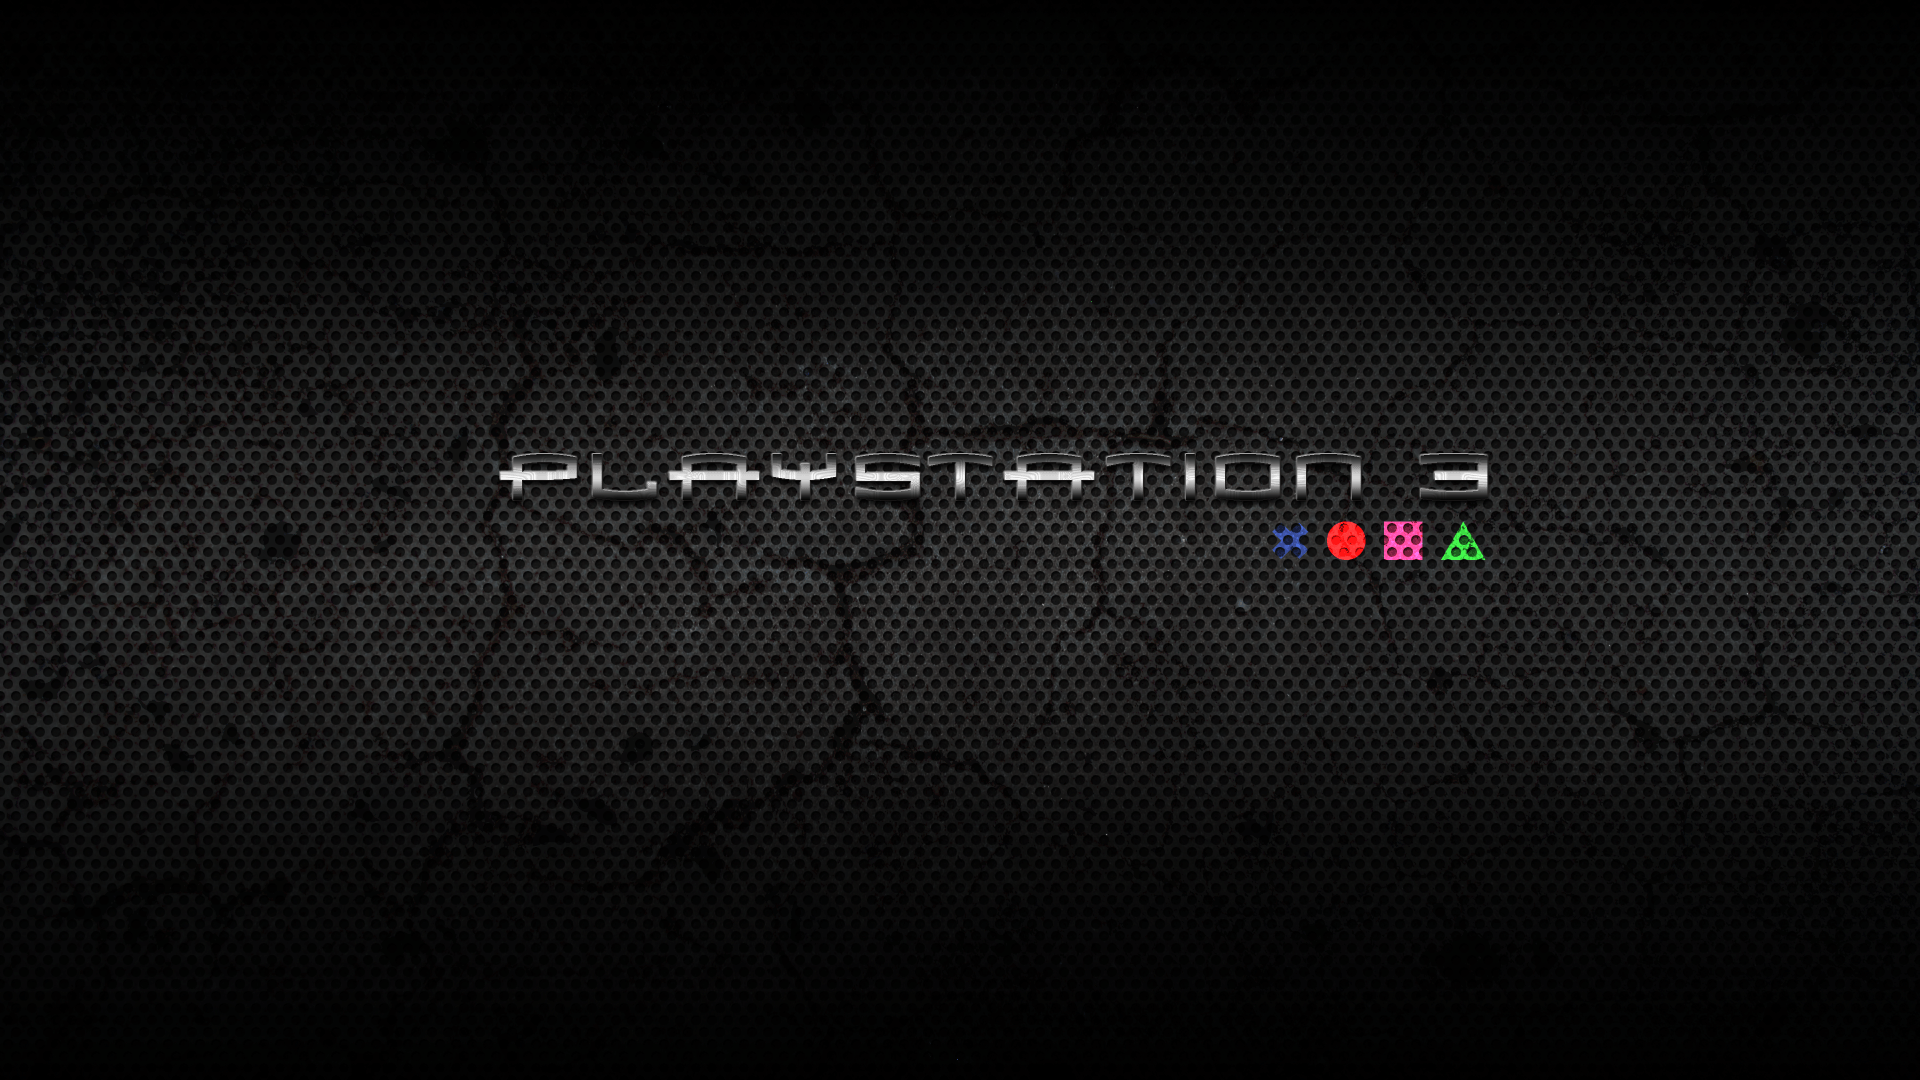 playstation 3 logo wallpaper